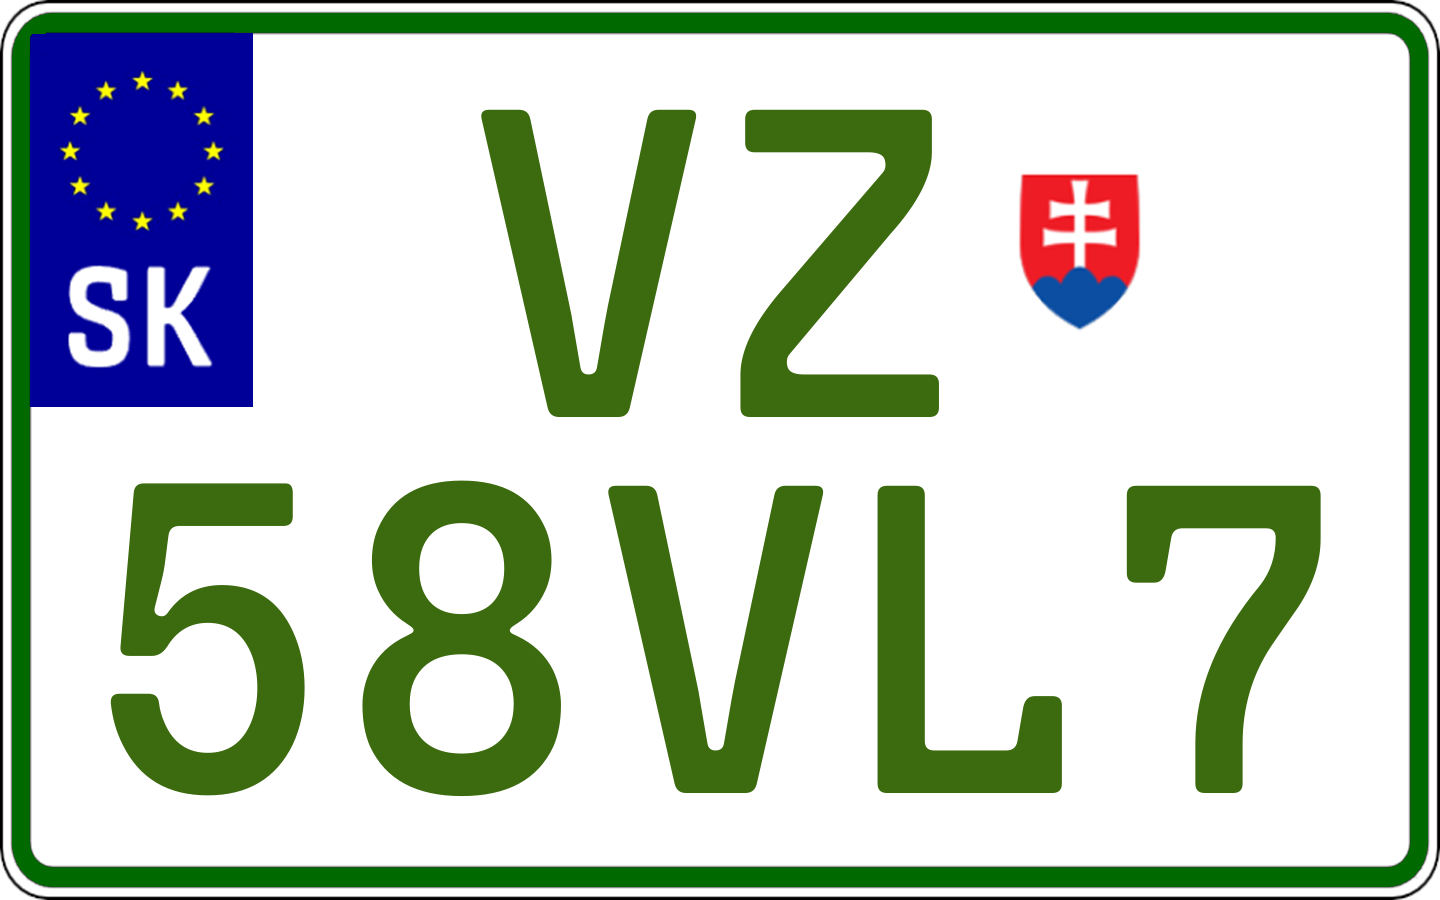 Typ IV - Elektro 2R